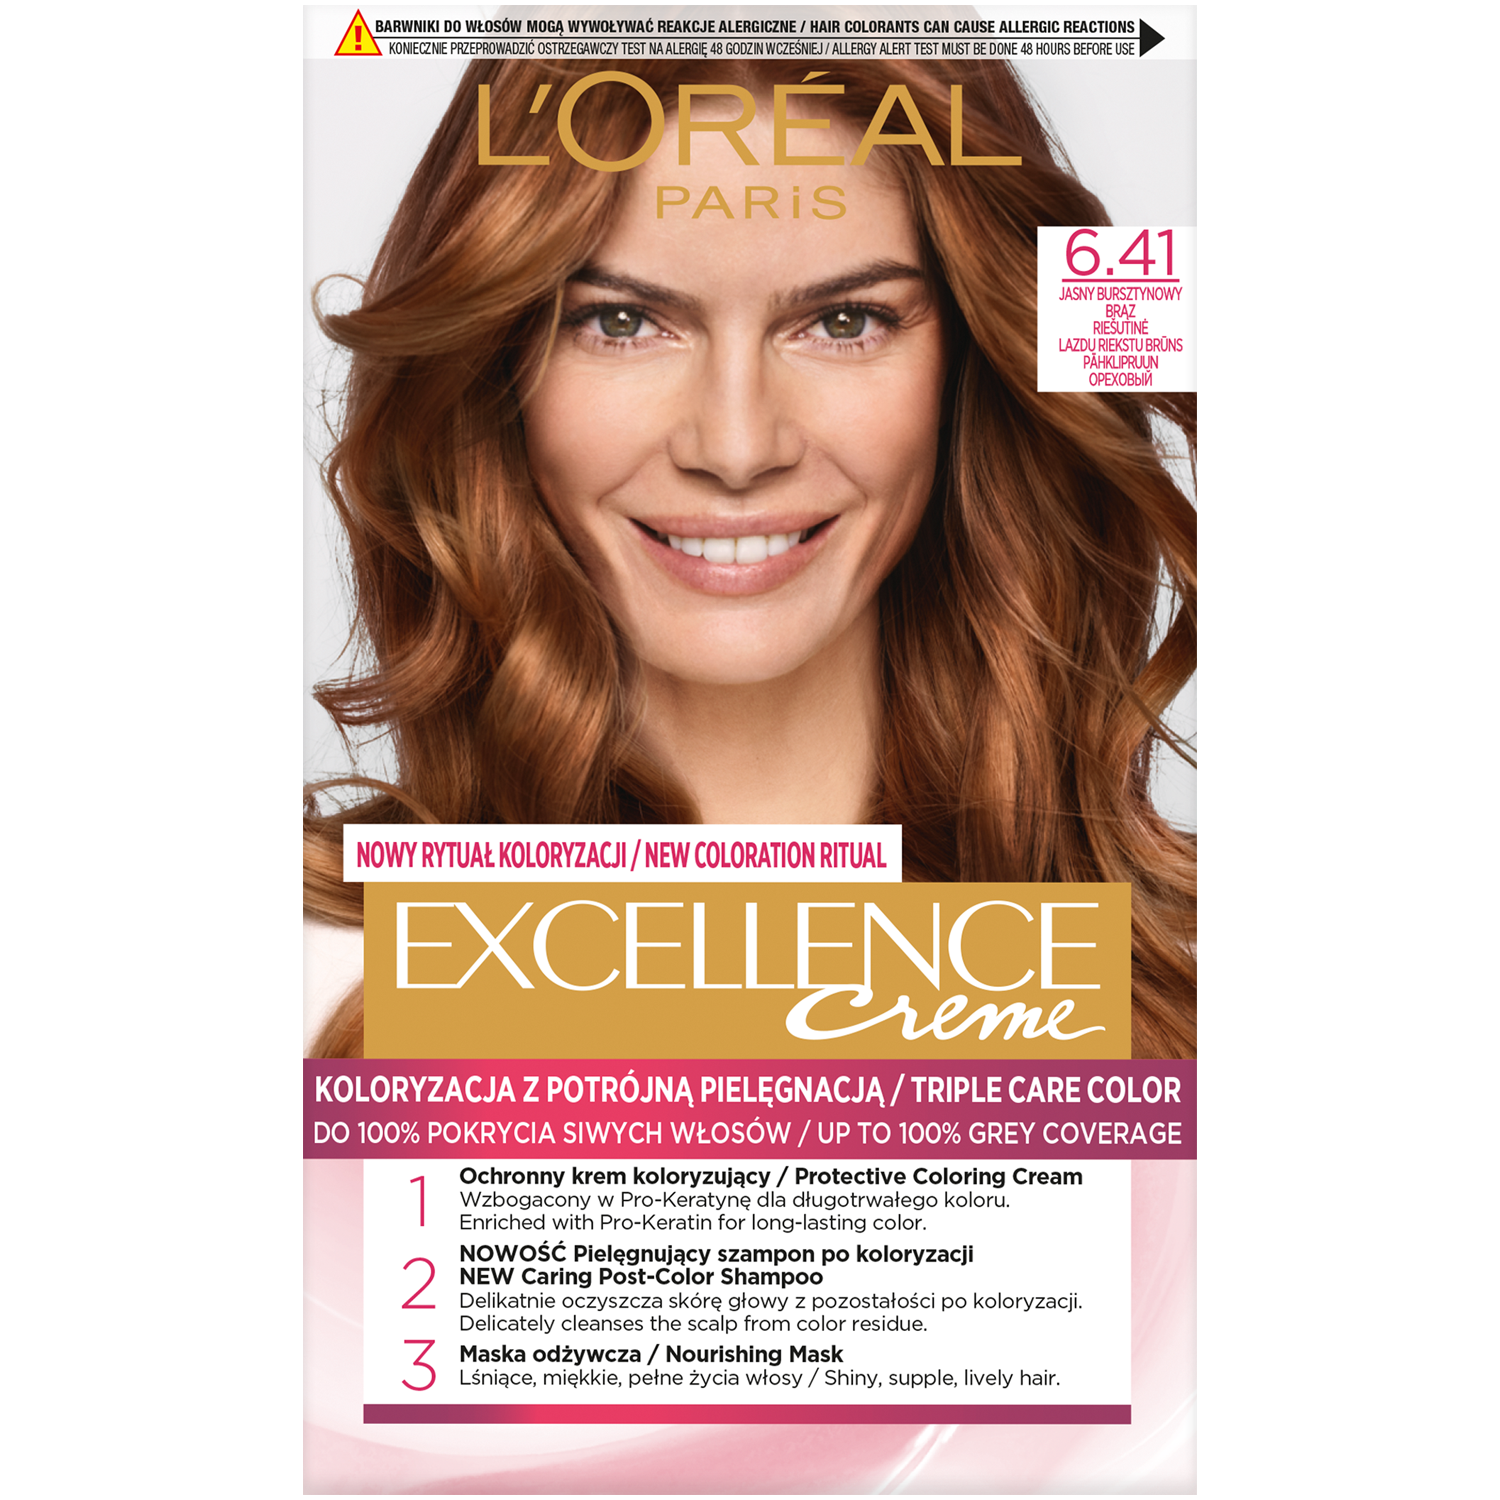 L'Oreal Paris farba do włosów 641 jasny bursztynowy brąz Excellence Creme |  hebe.pl